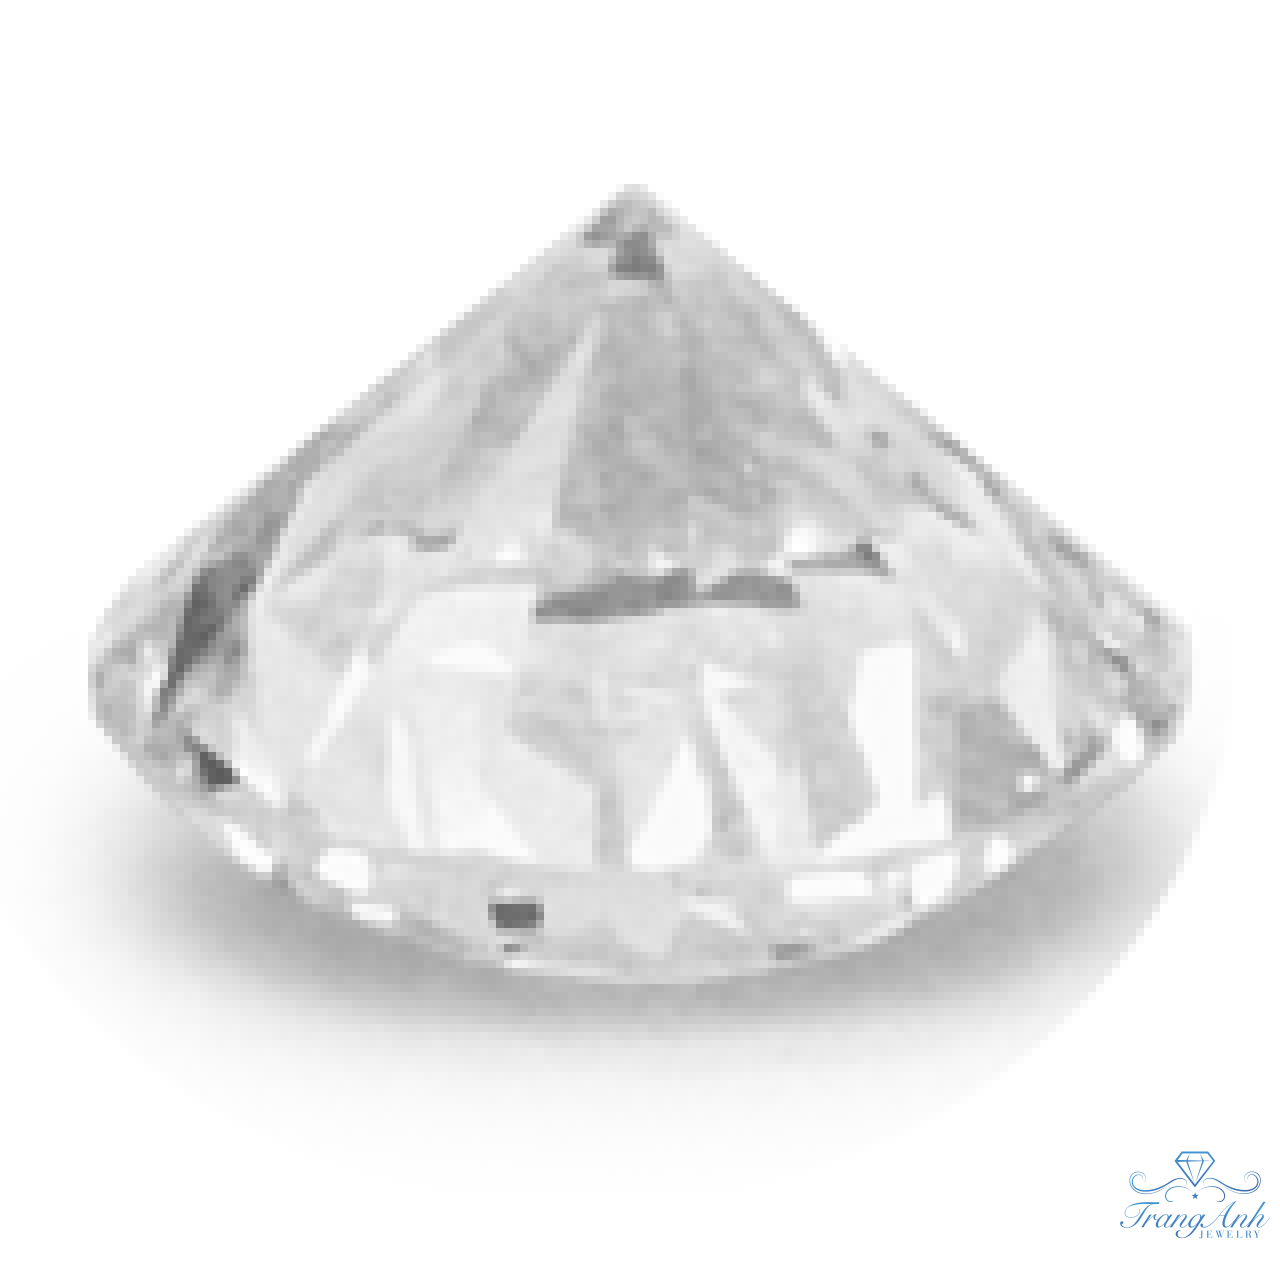 Kim cương GIA 5 ly 46 D/VS1/Faint